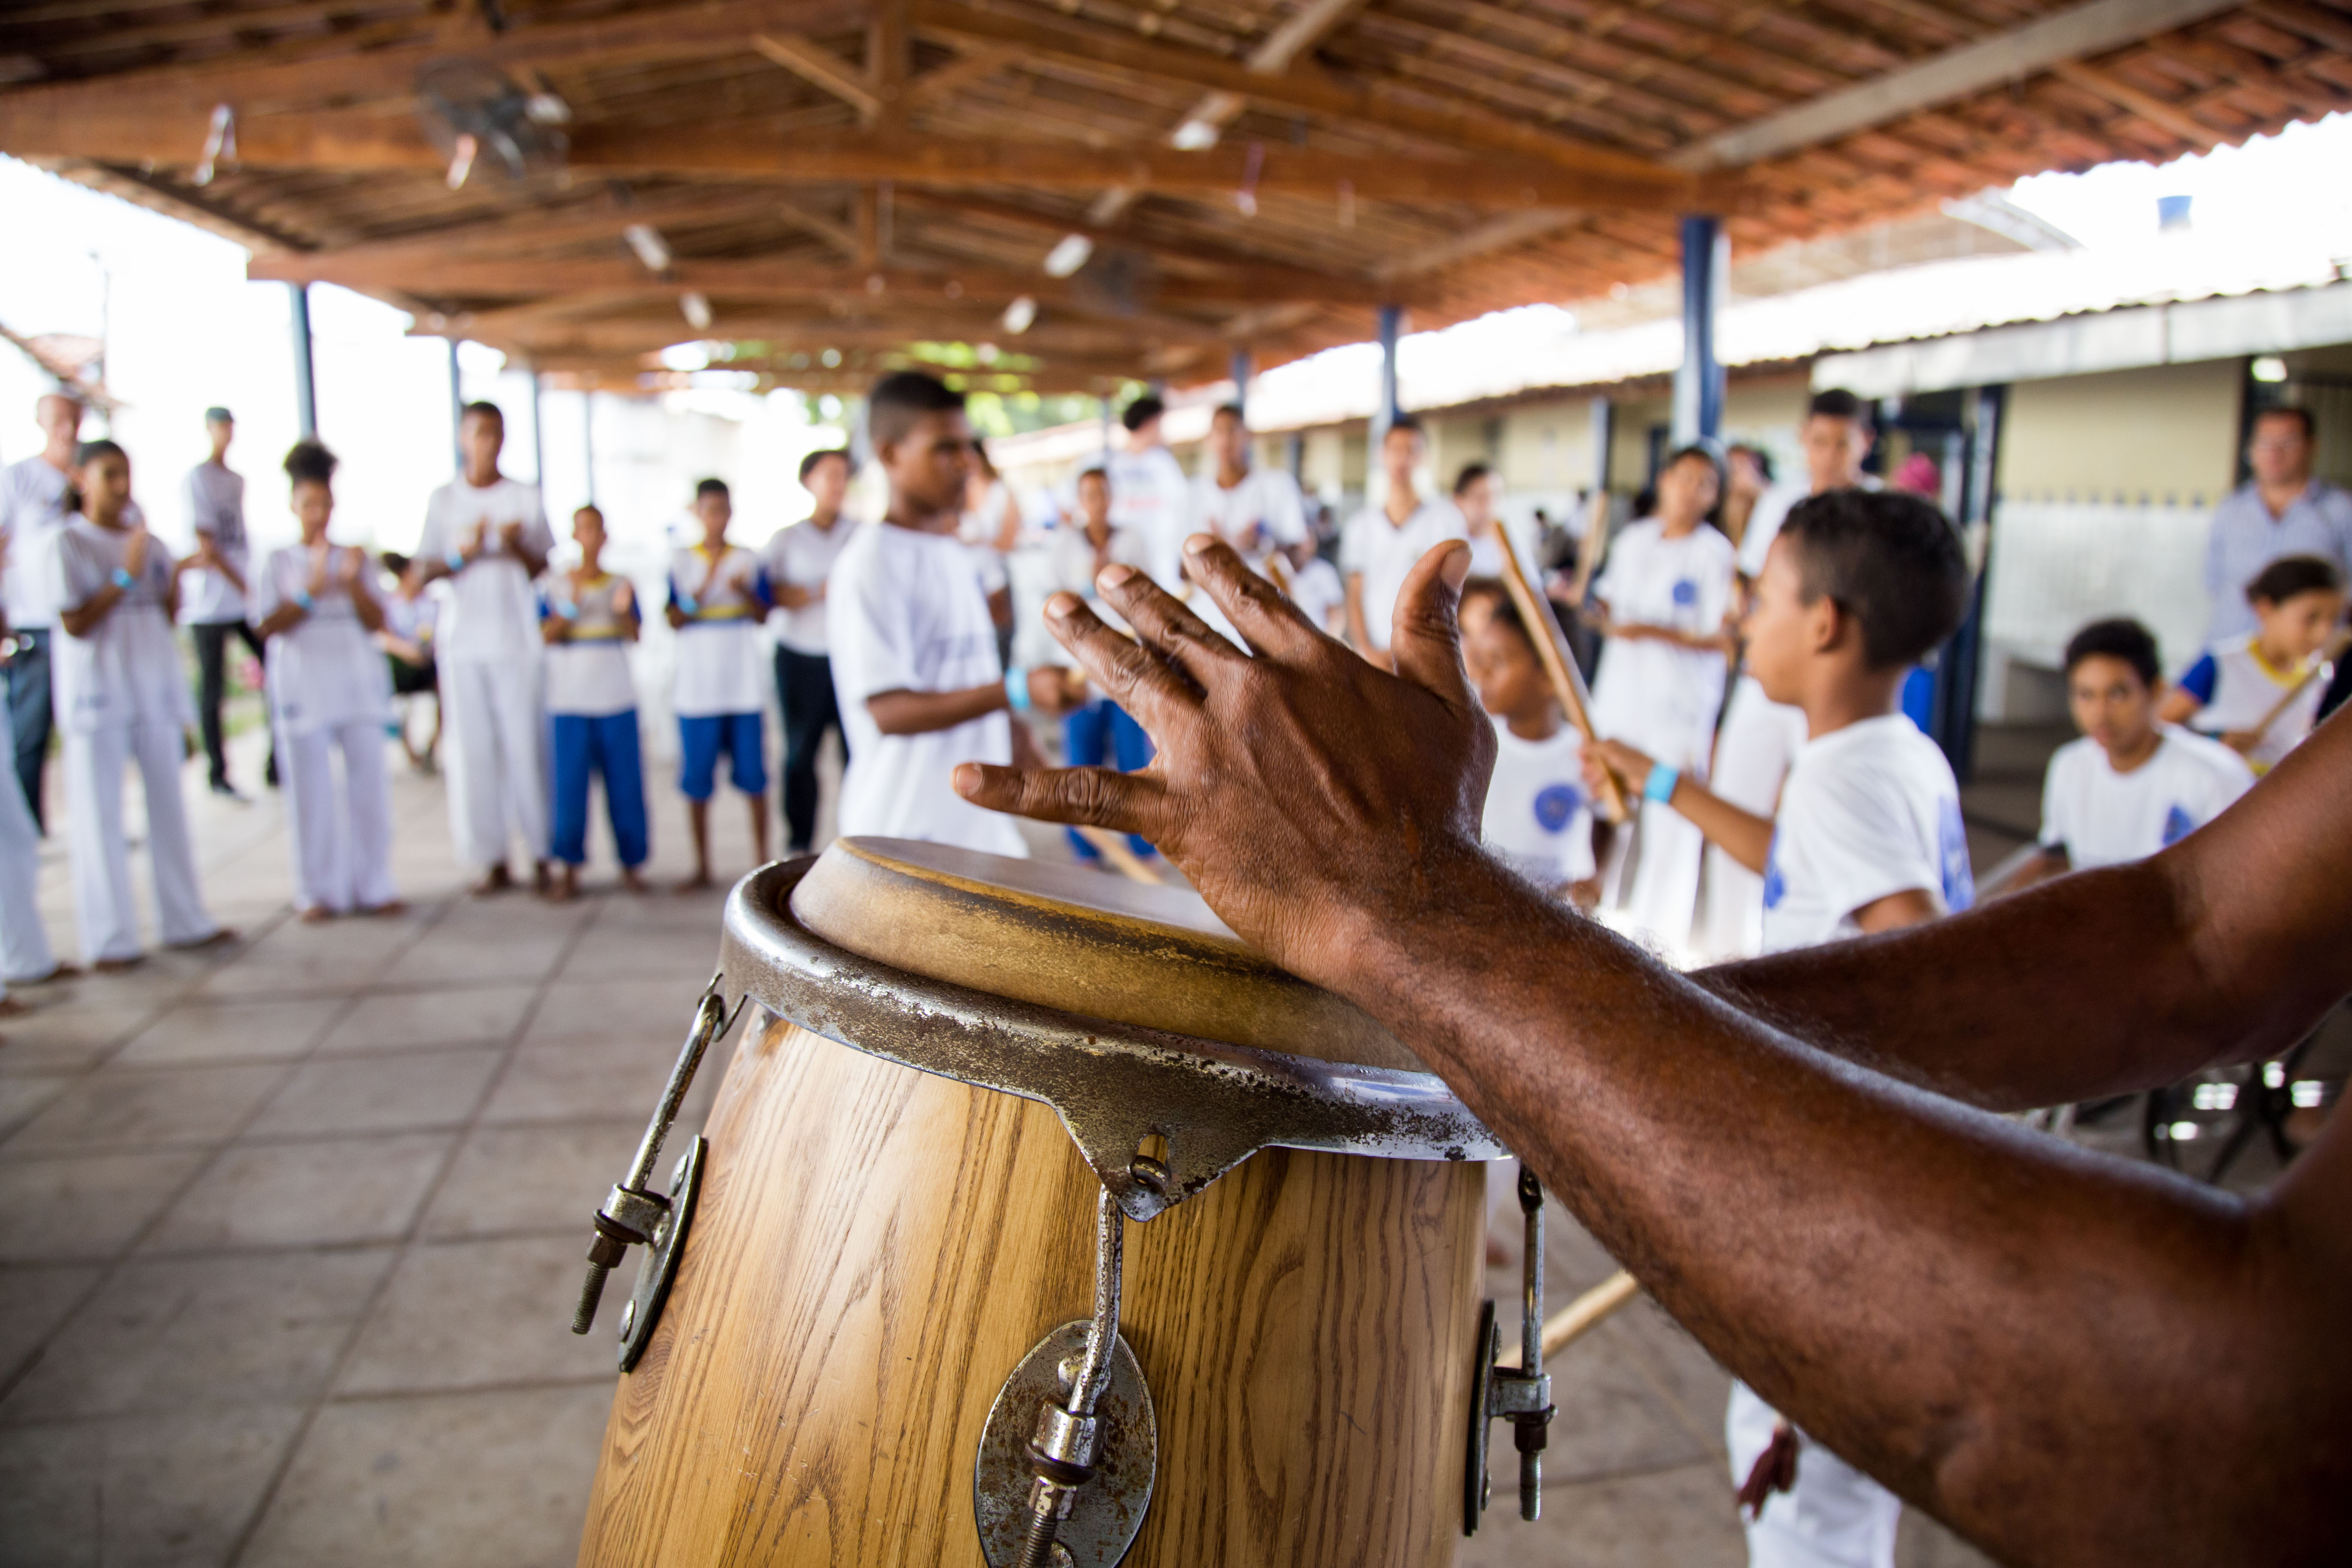 Mão toca o instrumento atabaque (tambor alto), enquanto crianças jogam capoeira ao fundo.